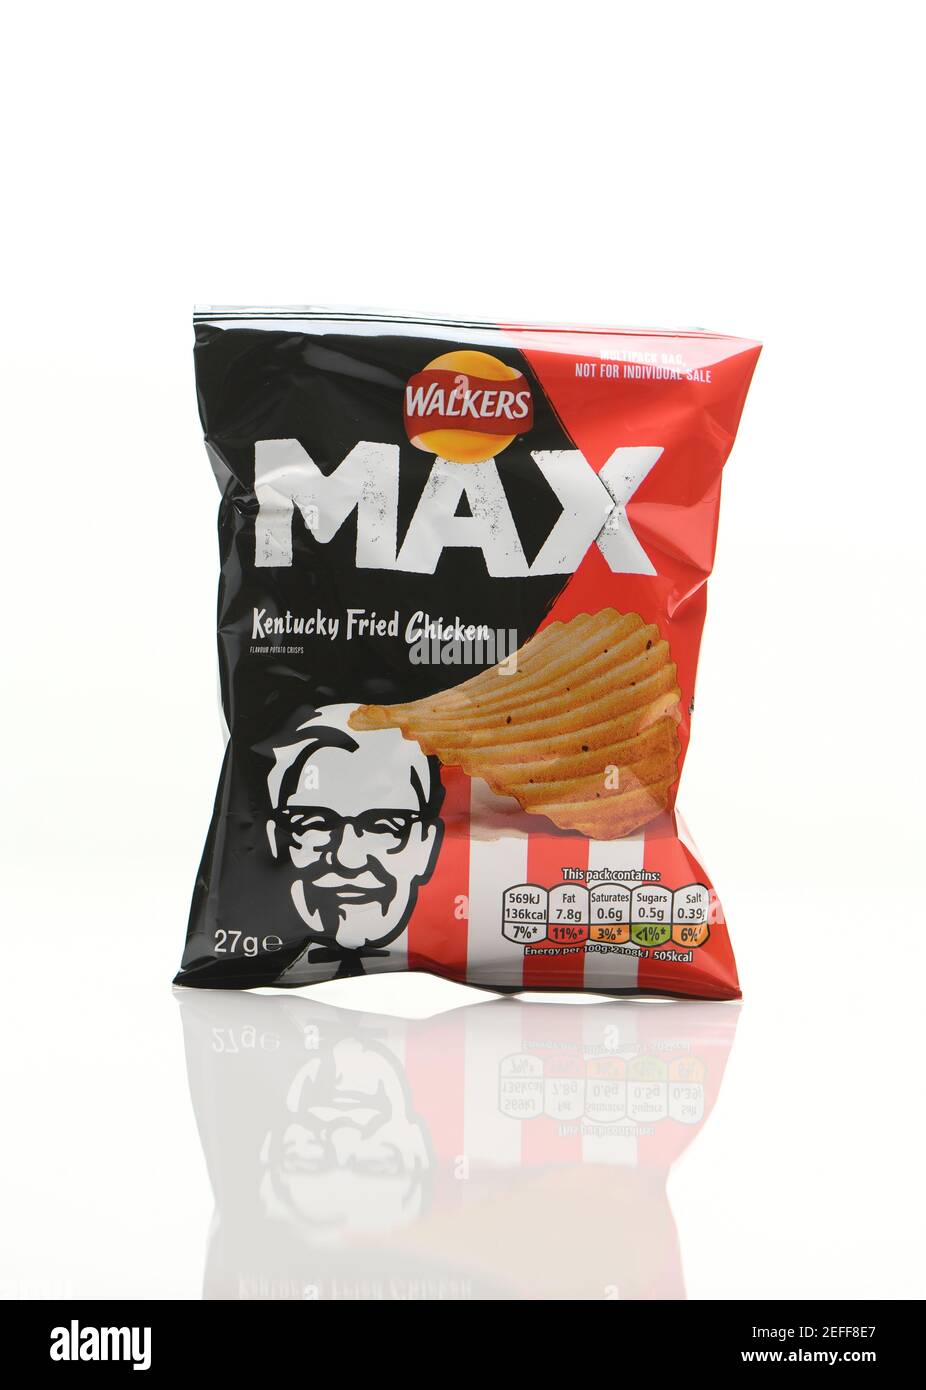 Kentucky Fried Chicken flavour Walkers max Crisps pacchetto su uno sfondo bianco con un riflesso. Foto Stock